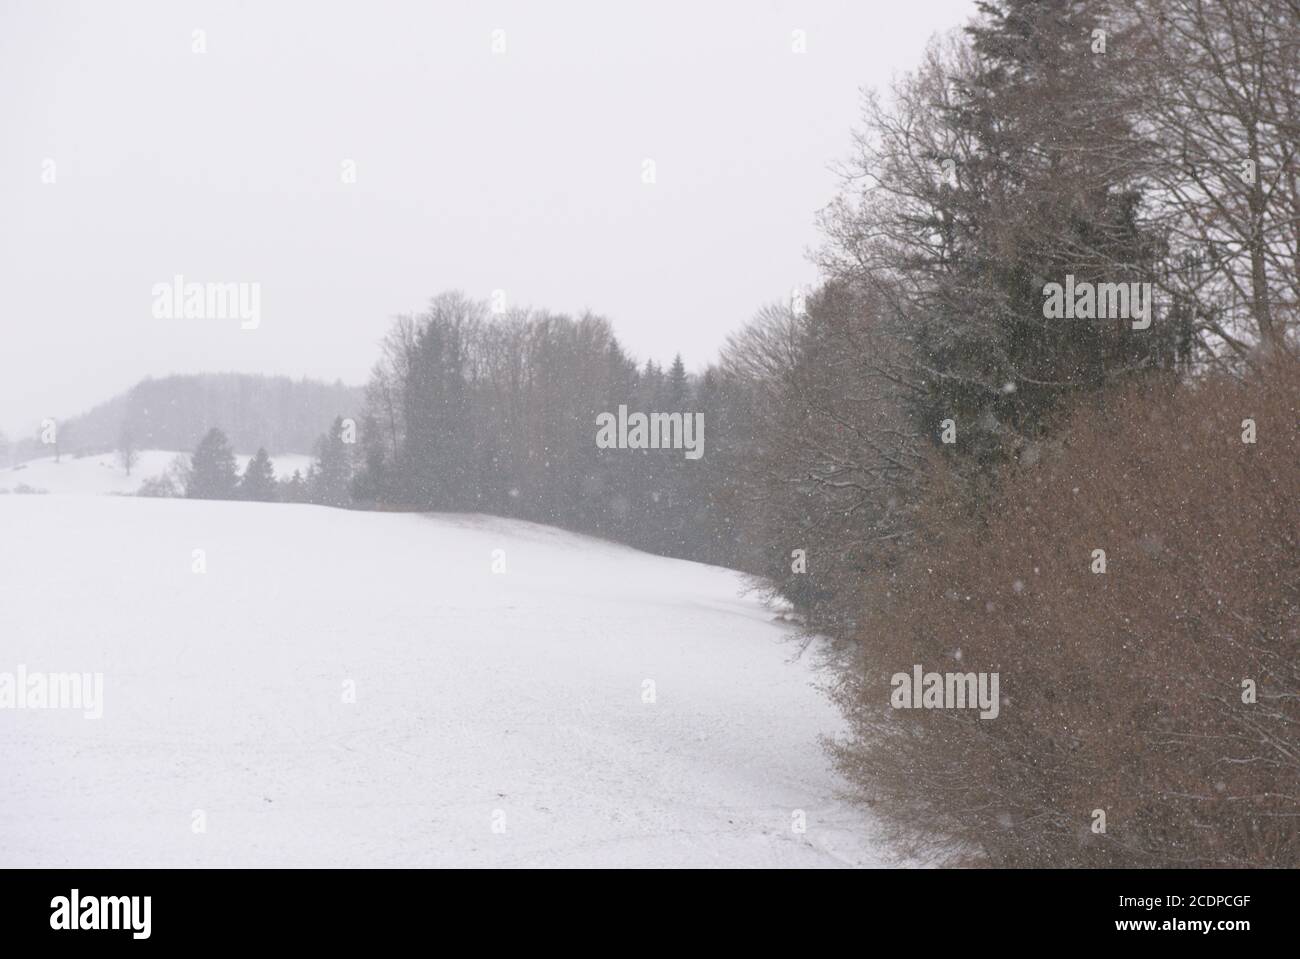 Schneetreiben auf einer Wiese mit blattlosen Bäumen Stock Photo